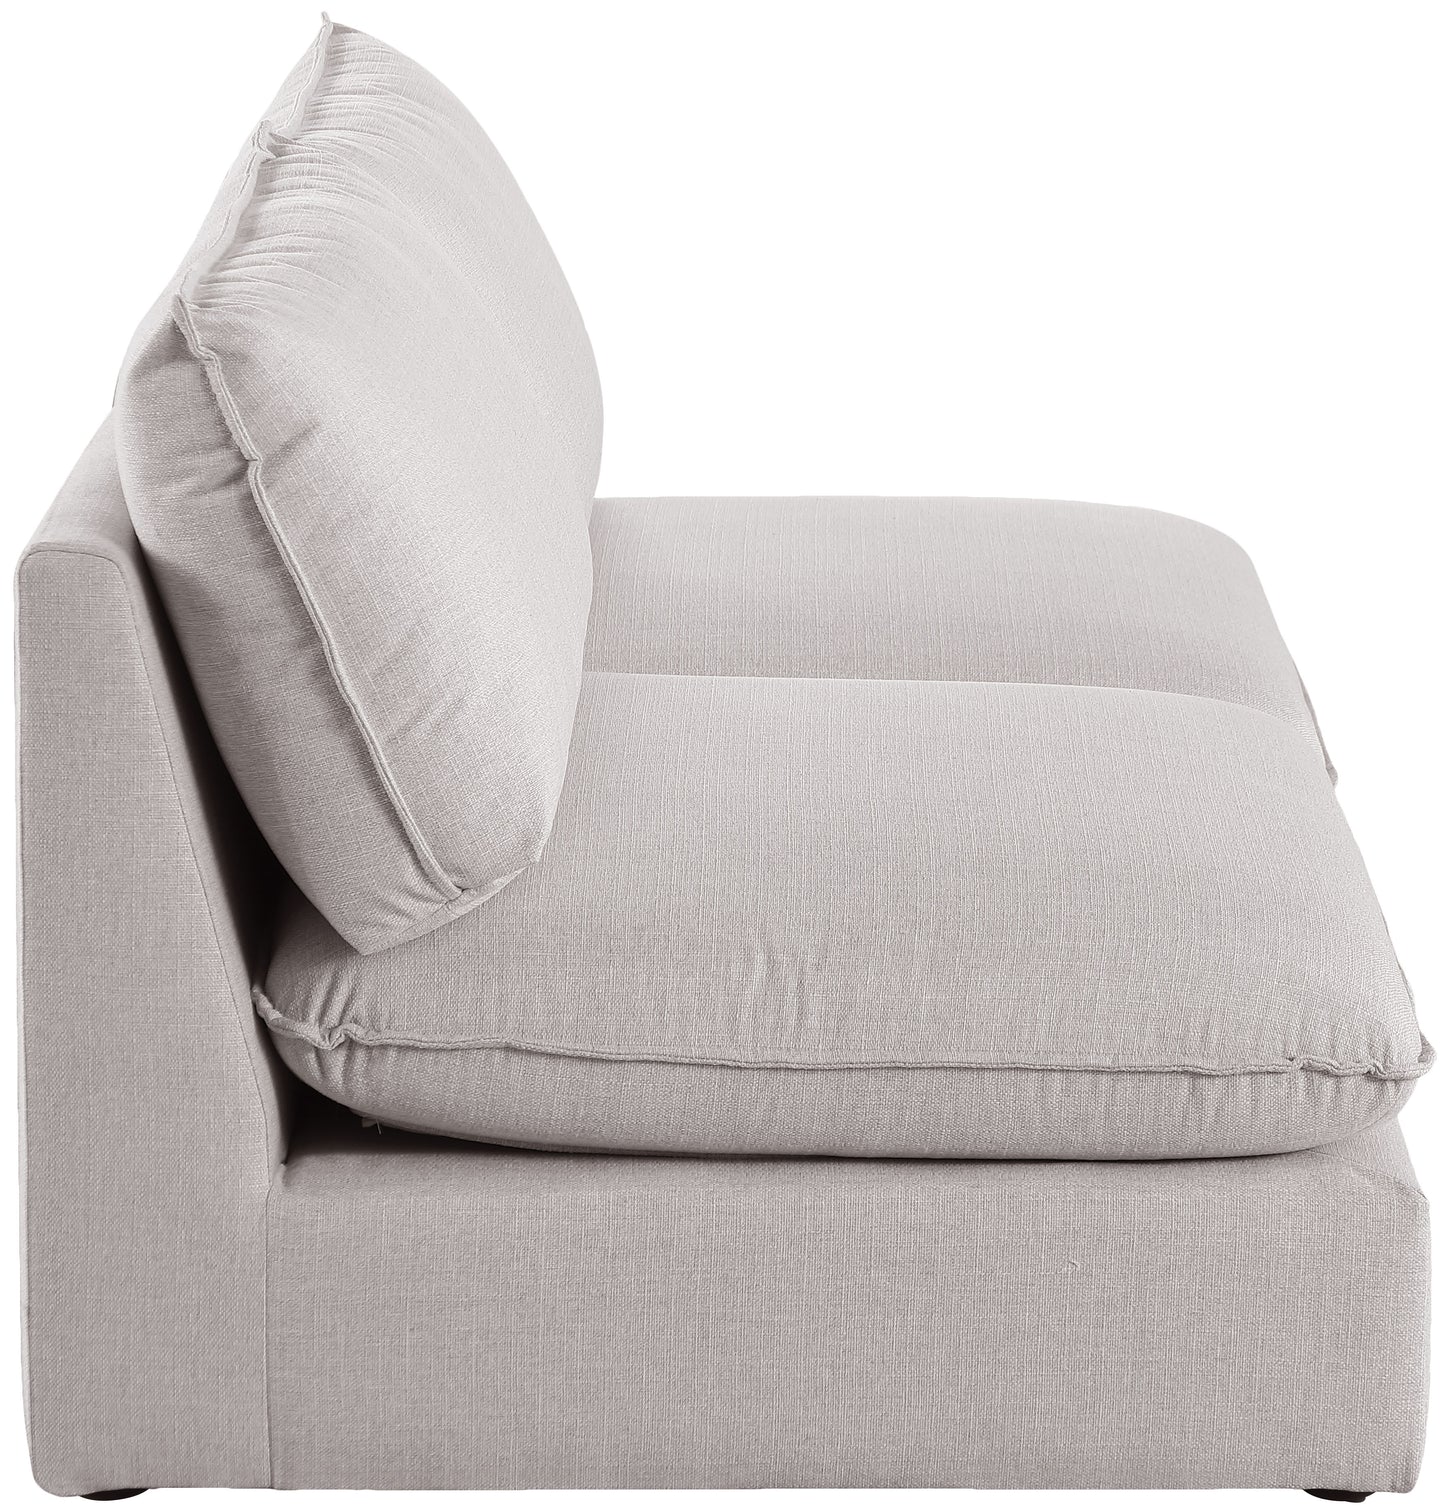 winston beige durable linen textured modular sofa s80a